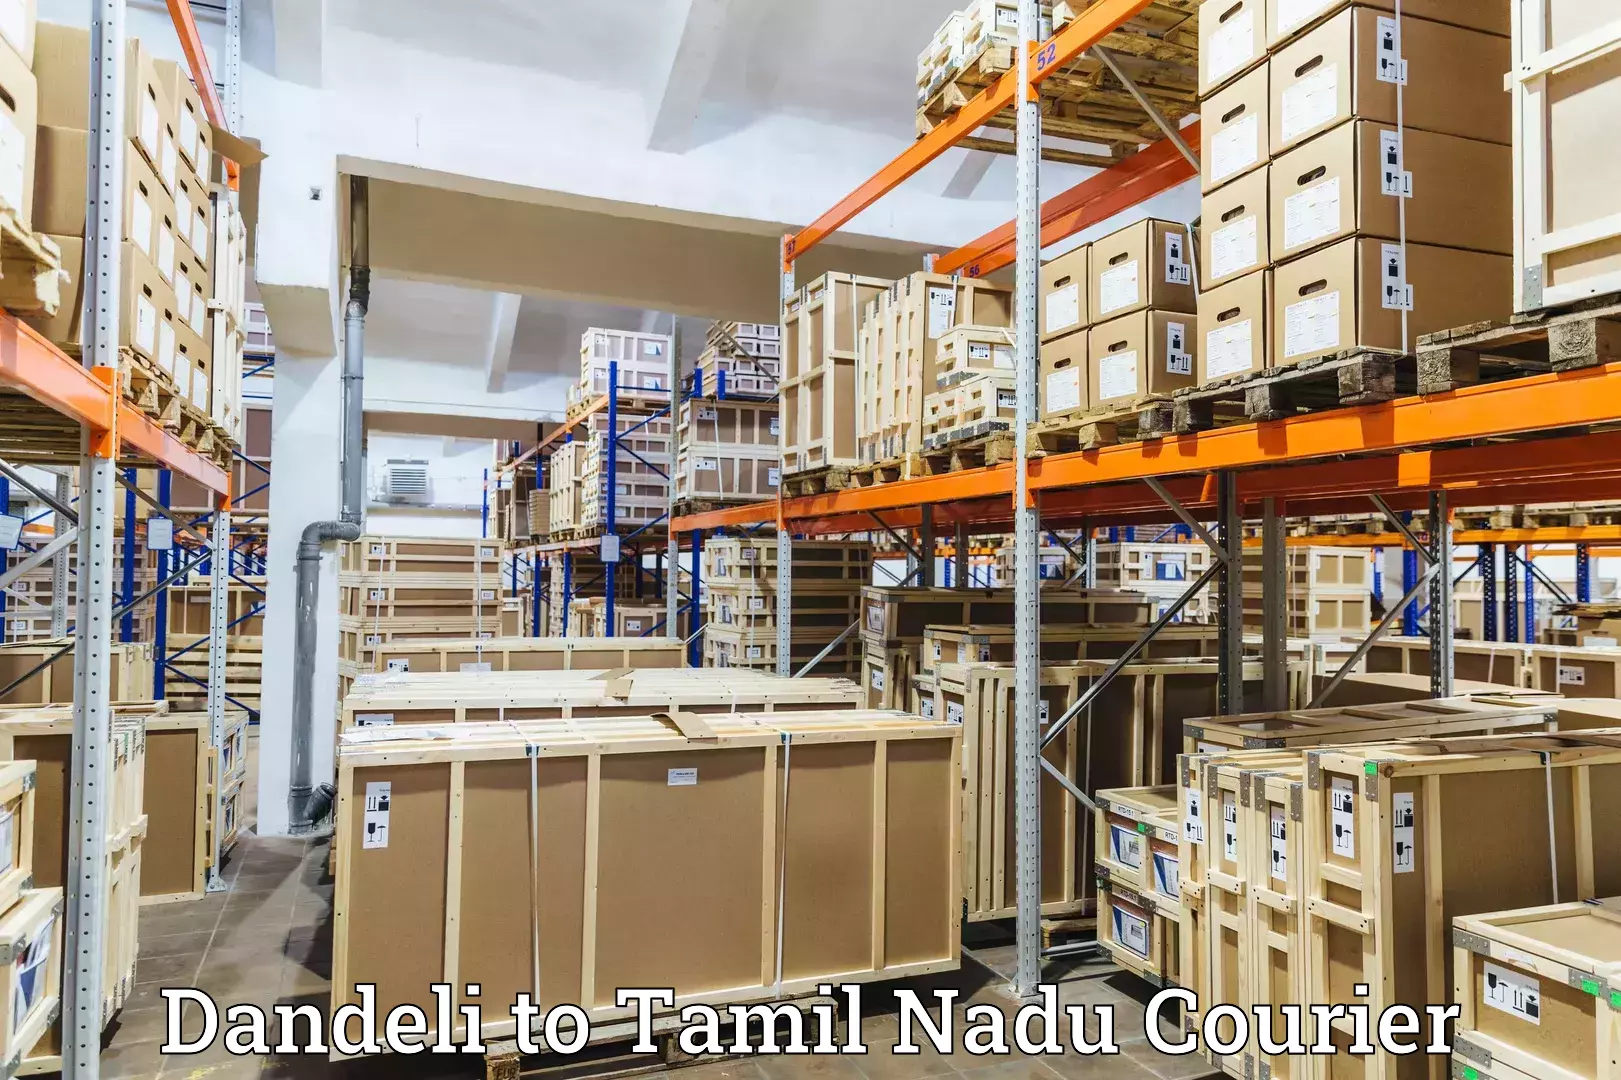 Cargo courier service Dandeli to Eral